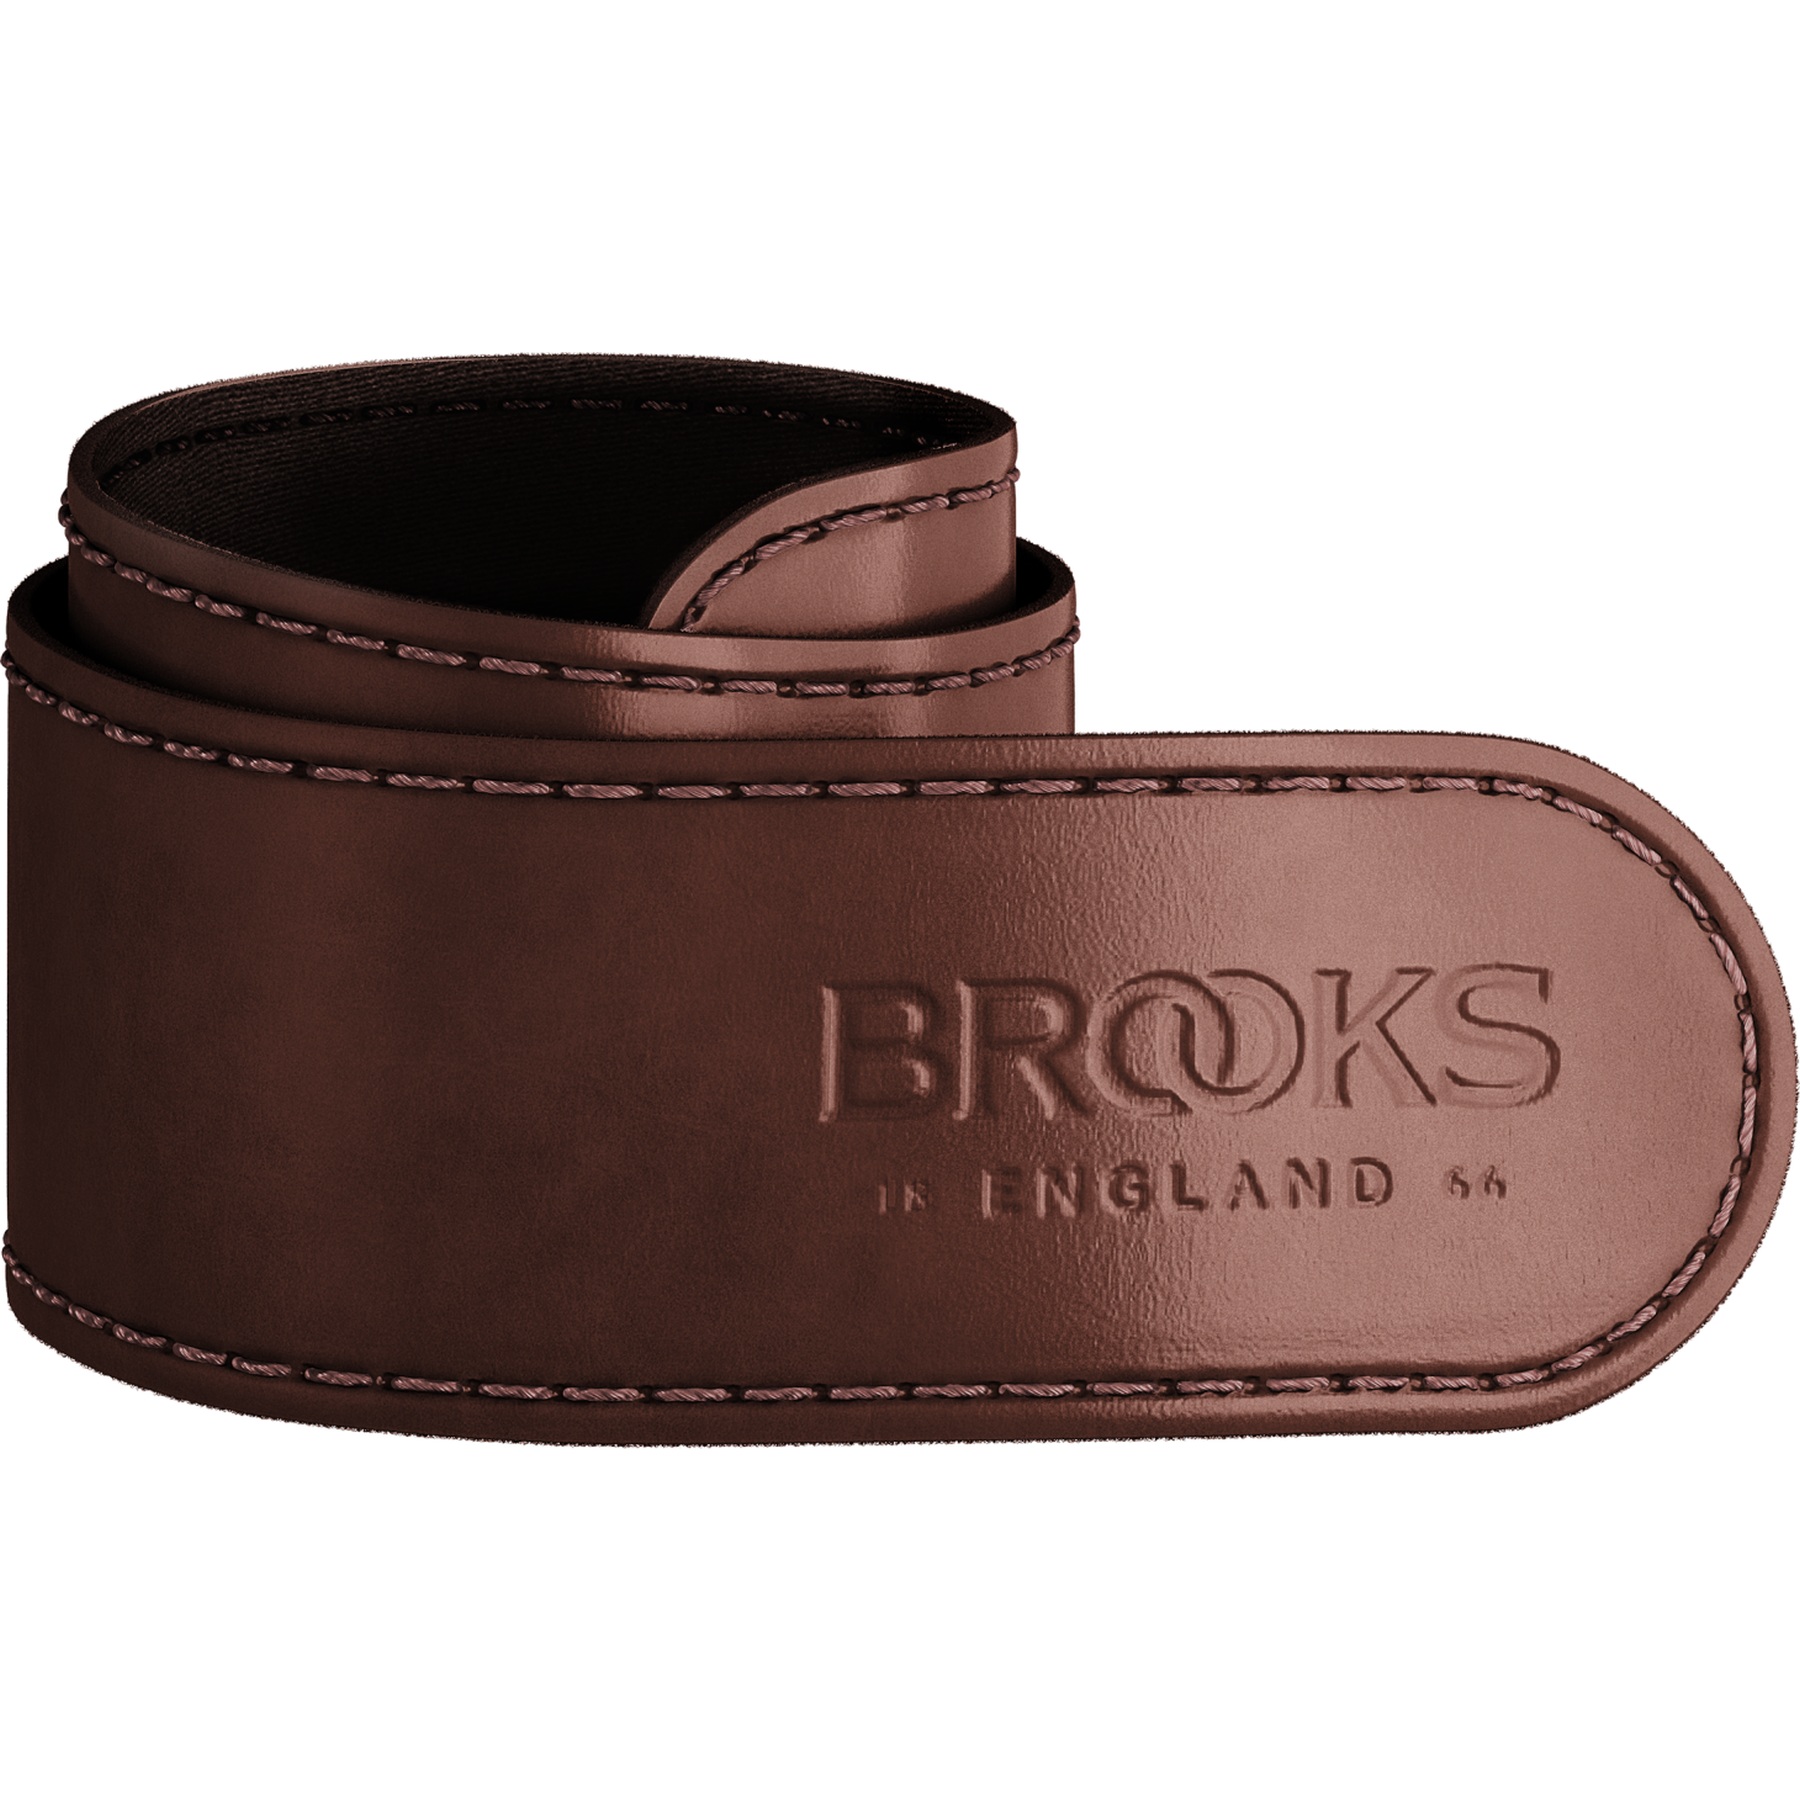 Produktbild von Brooks Trouser Strap Hosenbeinschutz - Braun